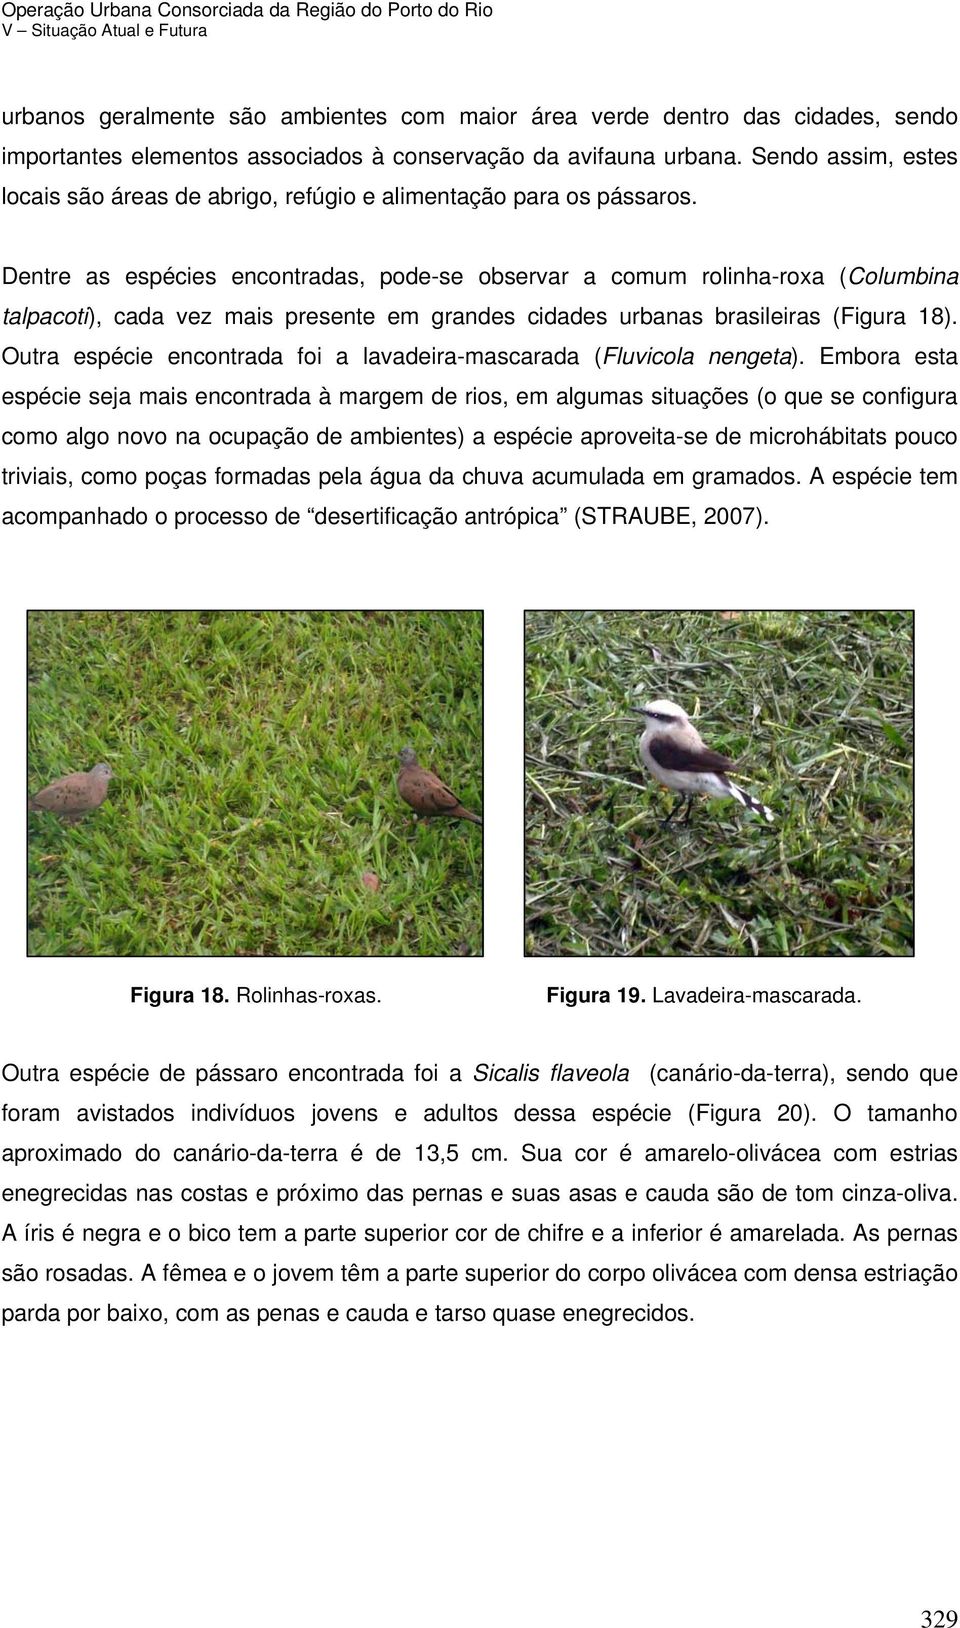 Dentre as espécies encontradas, pode-se observar a comum rolinha-roxa (Columbina talpacoti), cada vez mais presente em grandes cidades urbanas brasileiras (Figura 18).